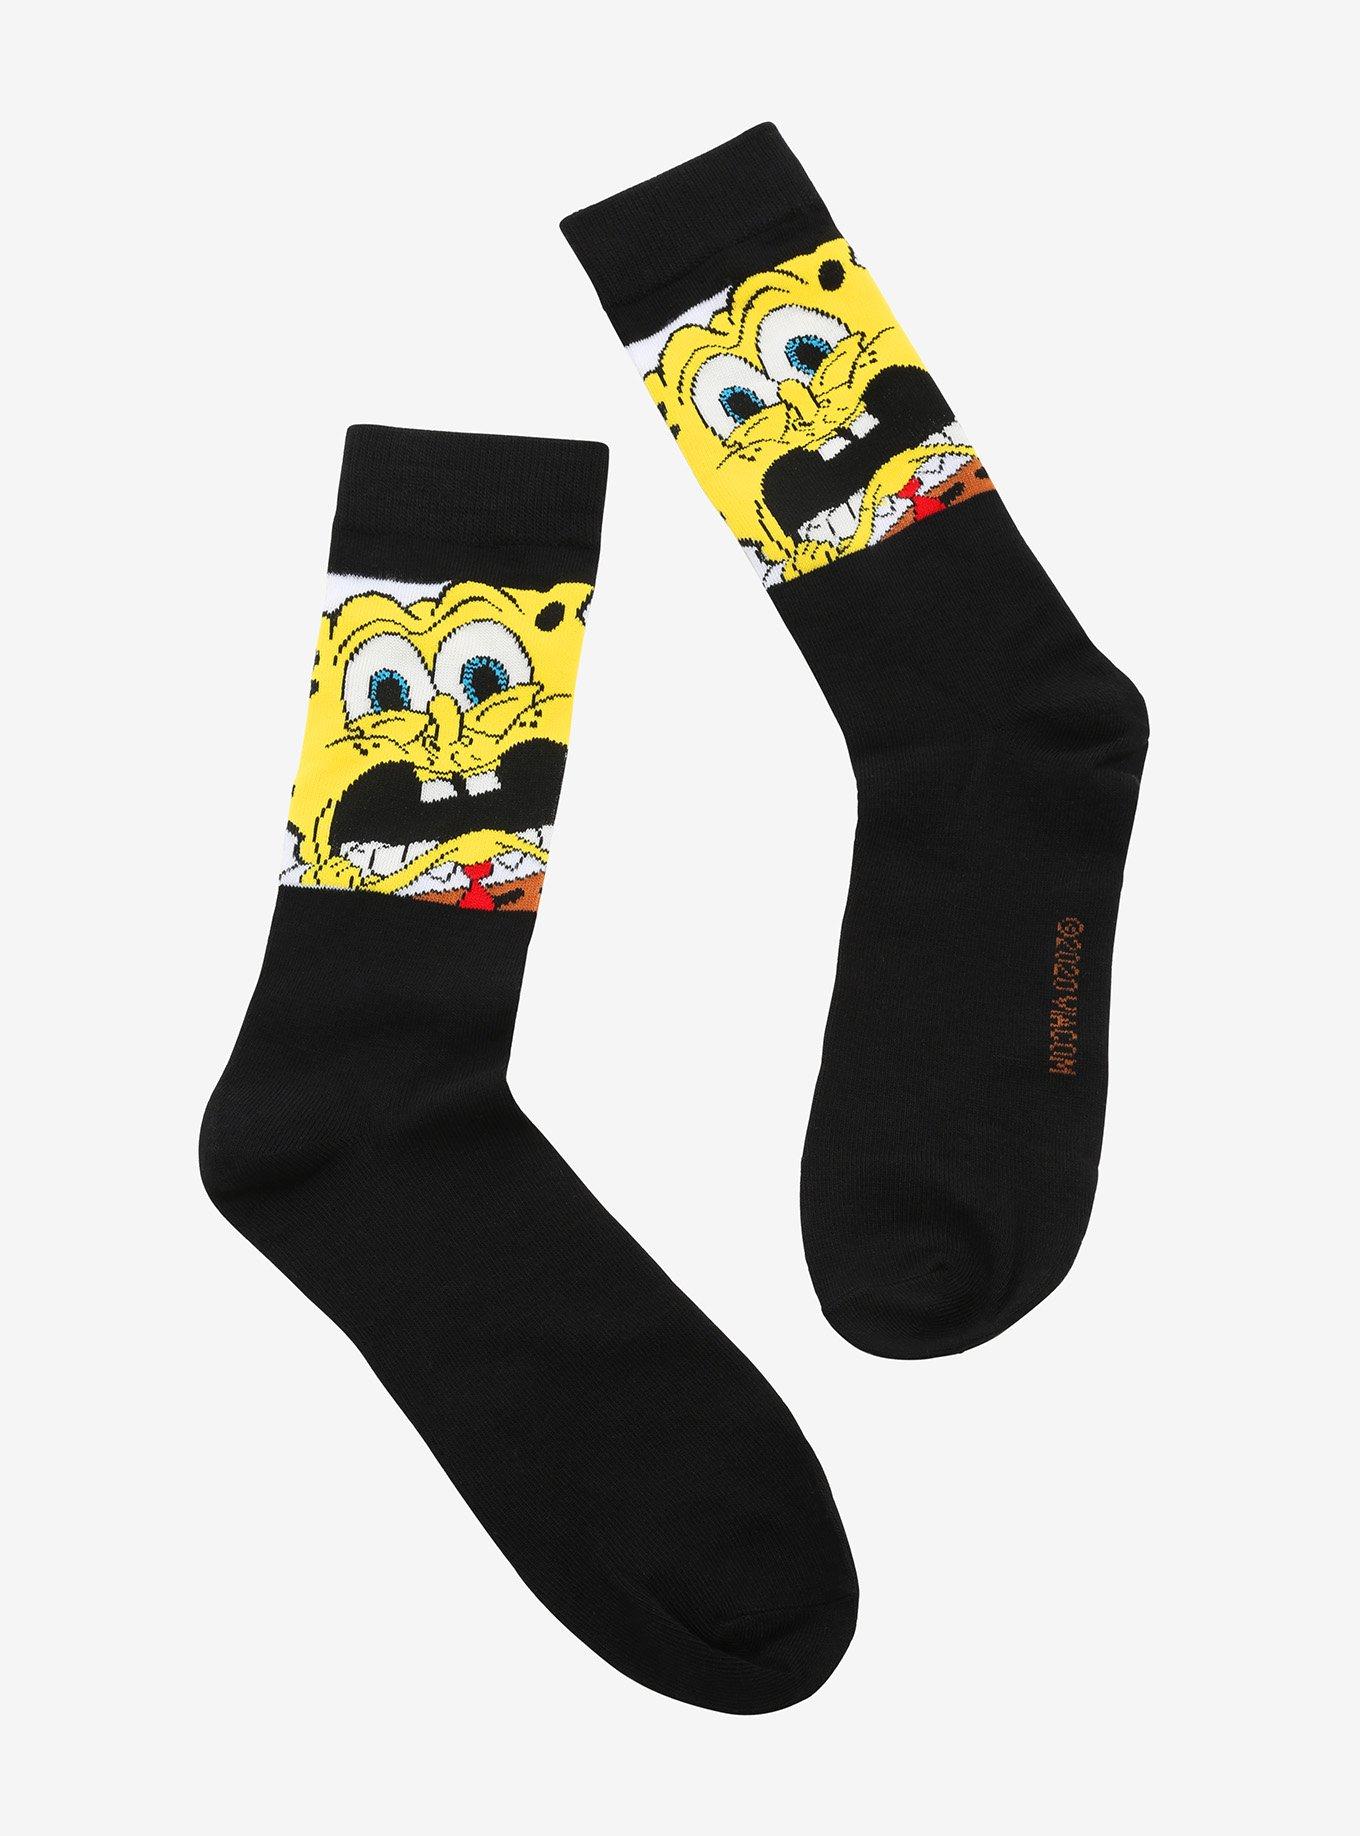 SpongeBob SquarePants Glow-In-The-Dark Crew Socks, , hi-res